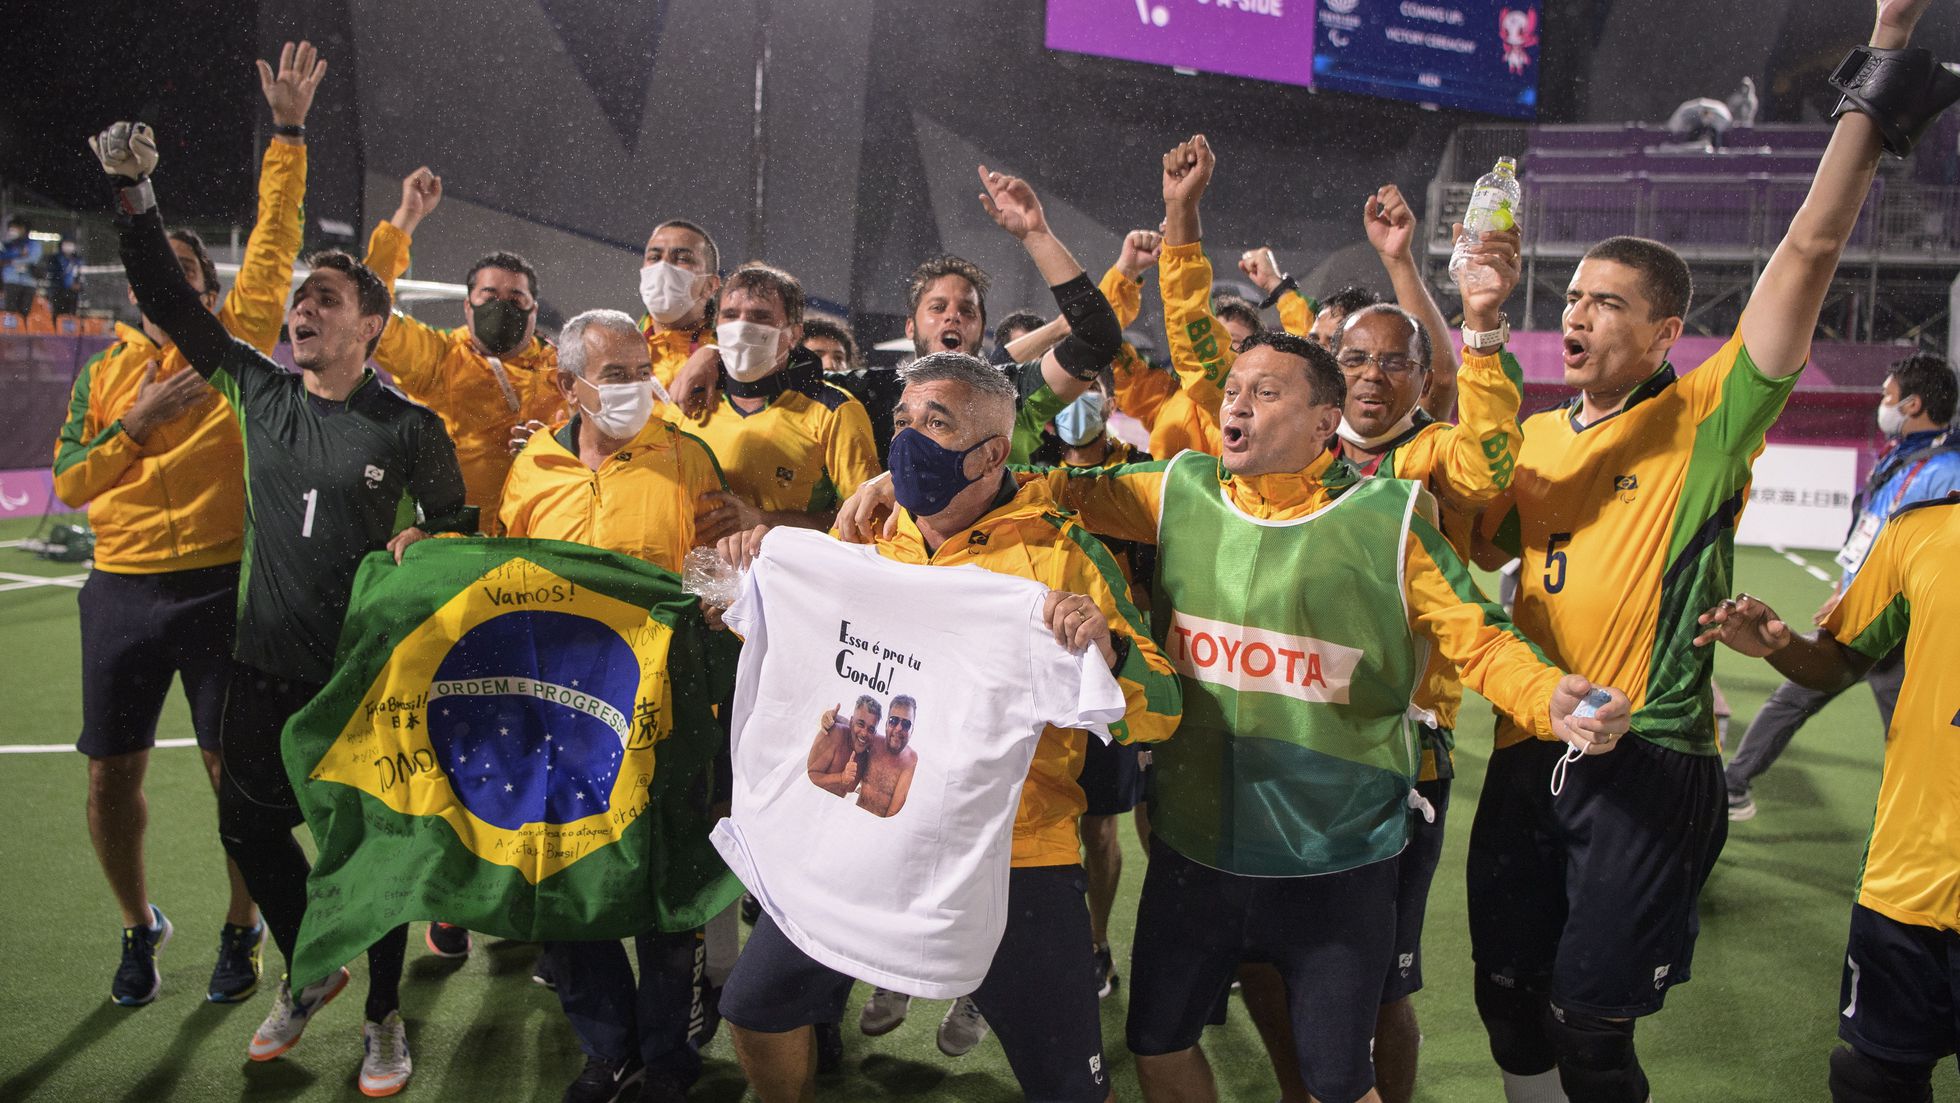 Jogos de luta no Brasil - Onde competir, esports